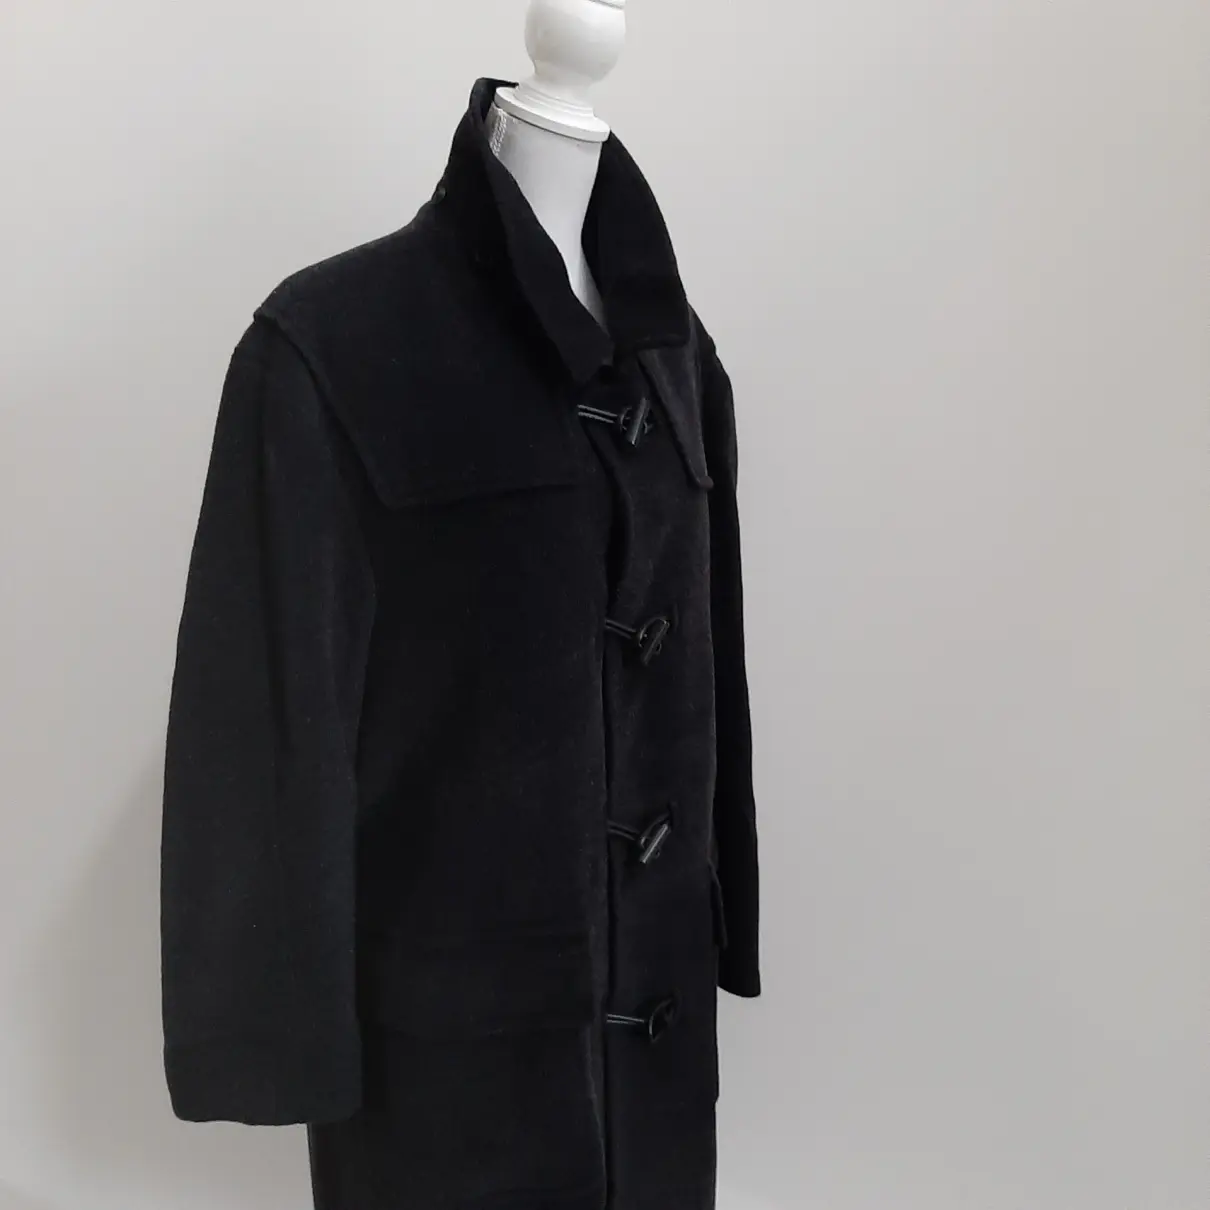 Wool dufflecoat Yves Saint Laurent - Vintage